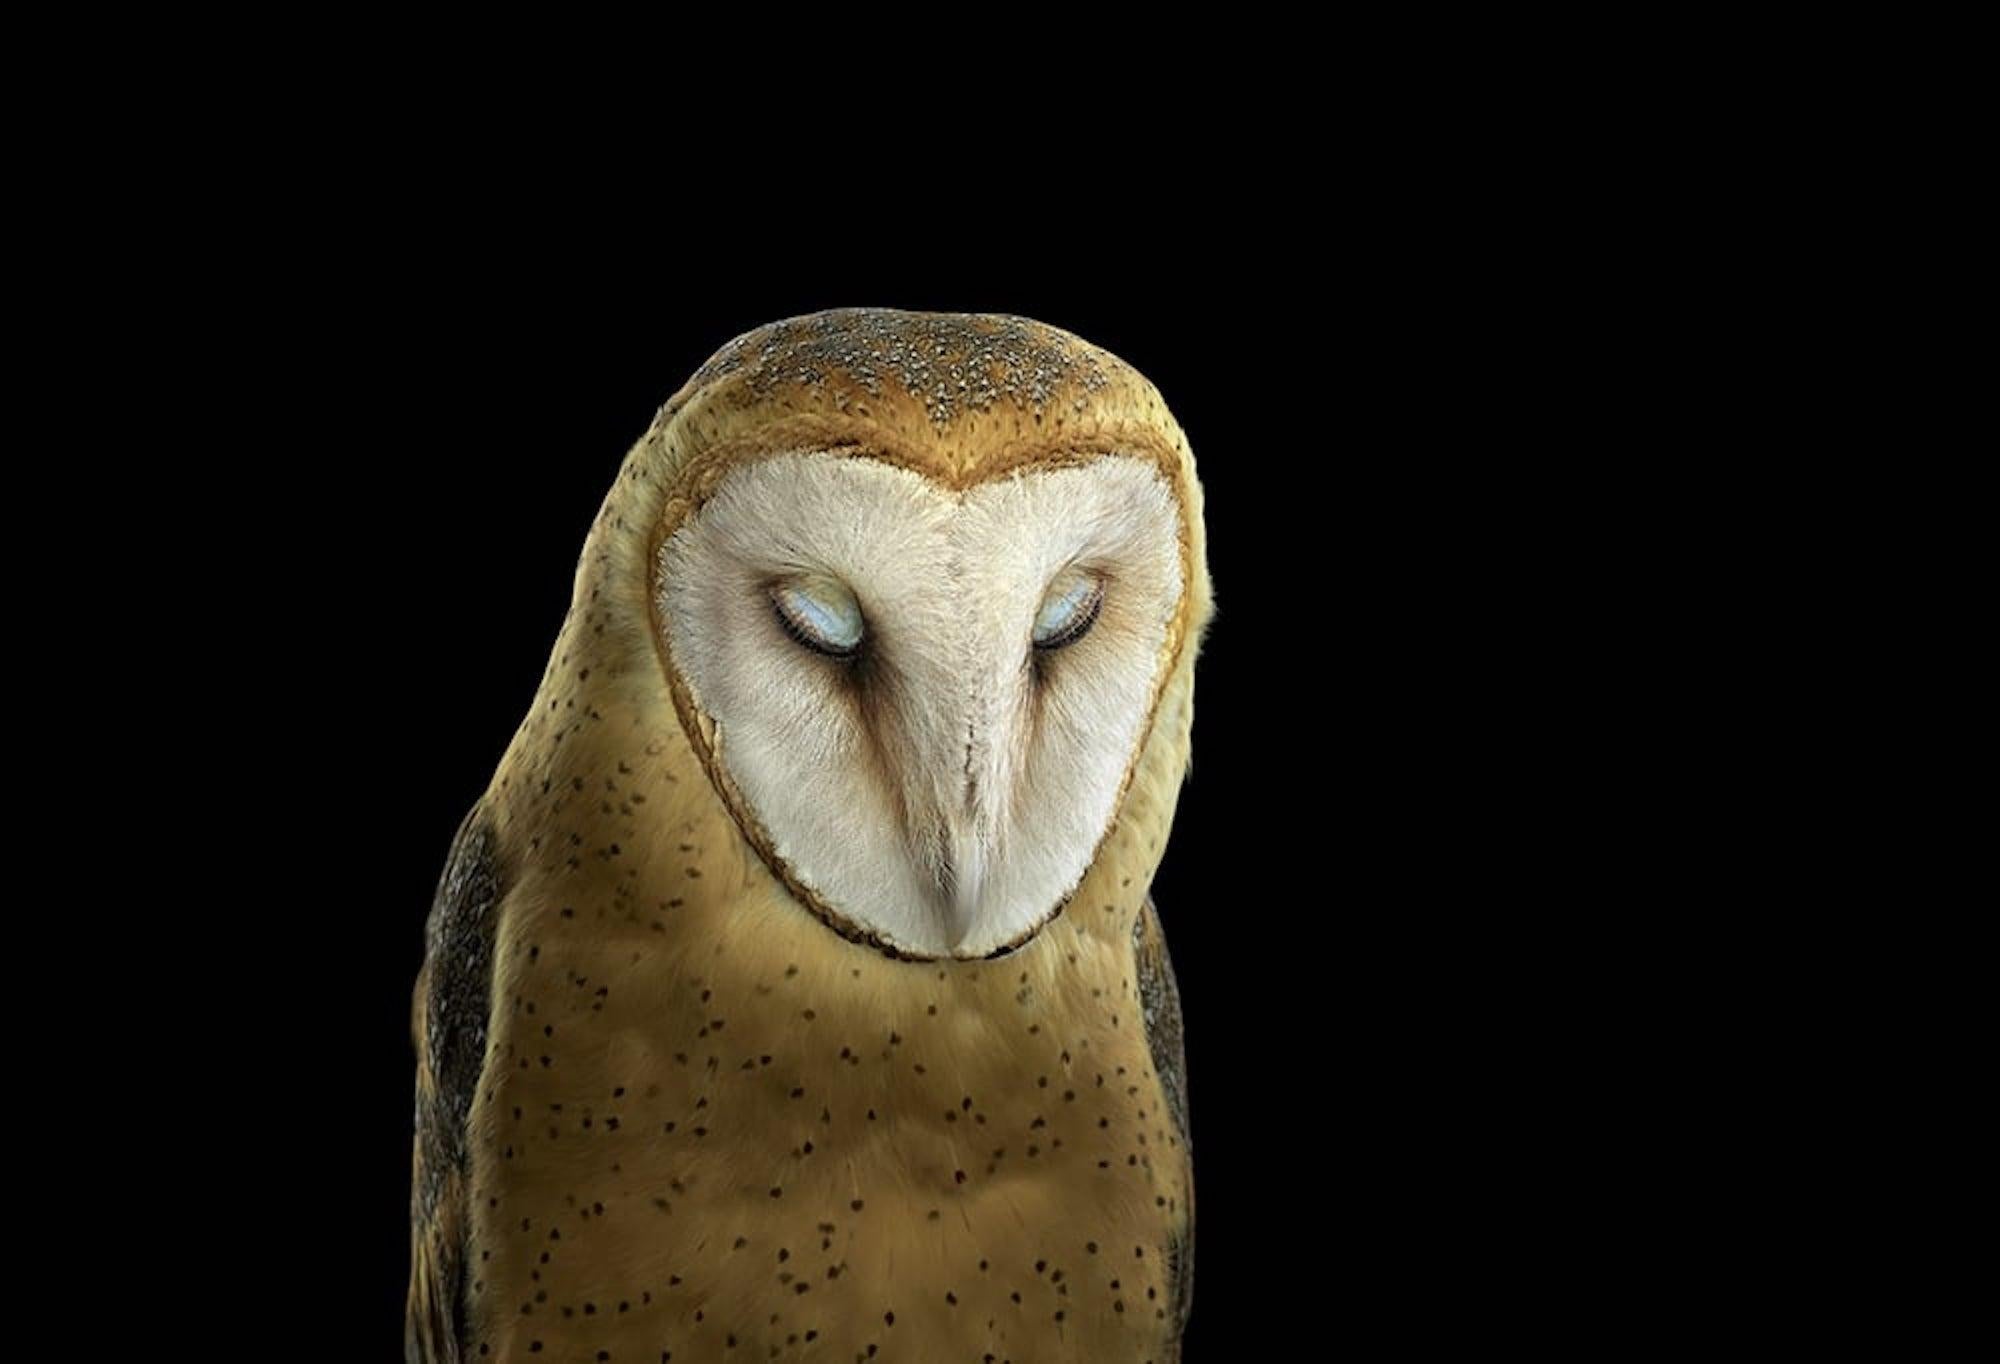 Die Fotografie "Barn Owl #3, St Louis, MO, 2012" ist eine limitierte Auflage des zeitgenössischen Künstlers Brad Wilson aus der Serie "Affinity", die Studioporträts von Wildtieren zeigt. 

Dieses Foto wird nur als ungerahmter Abzug verkauft. Es ist